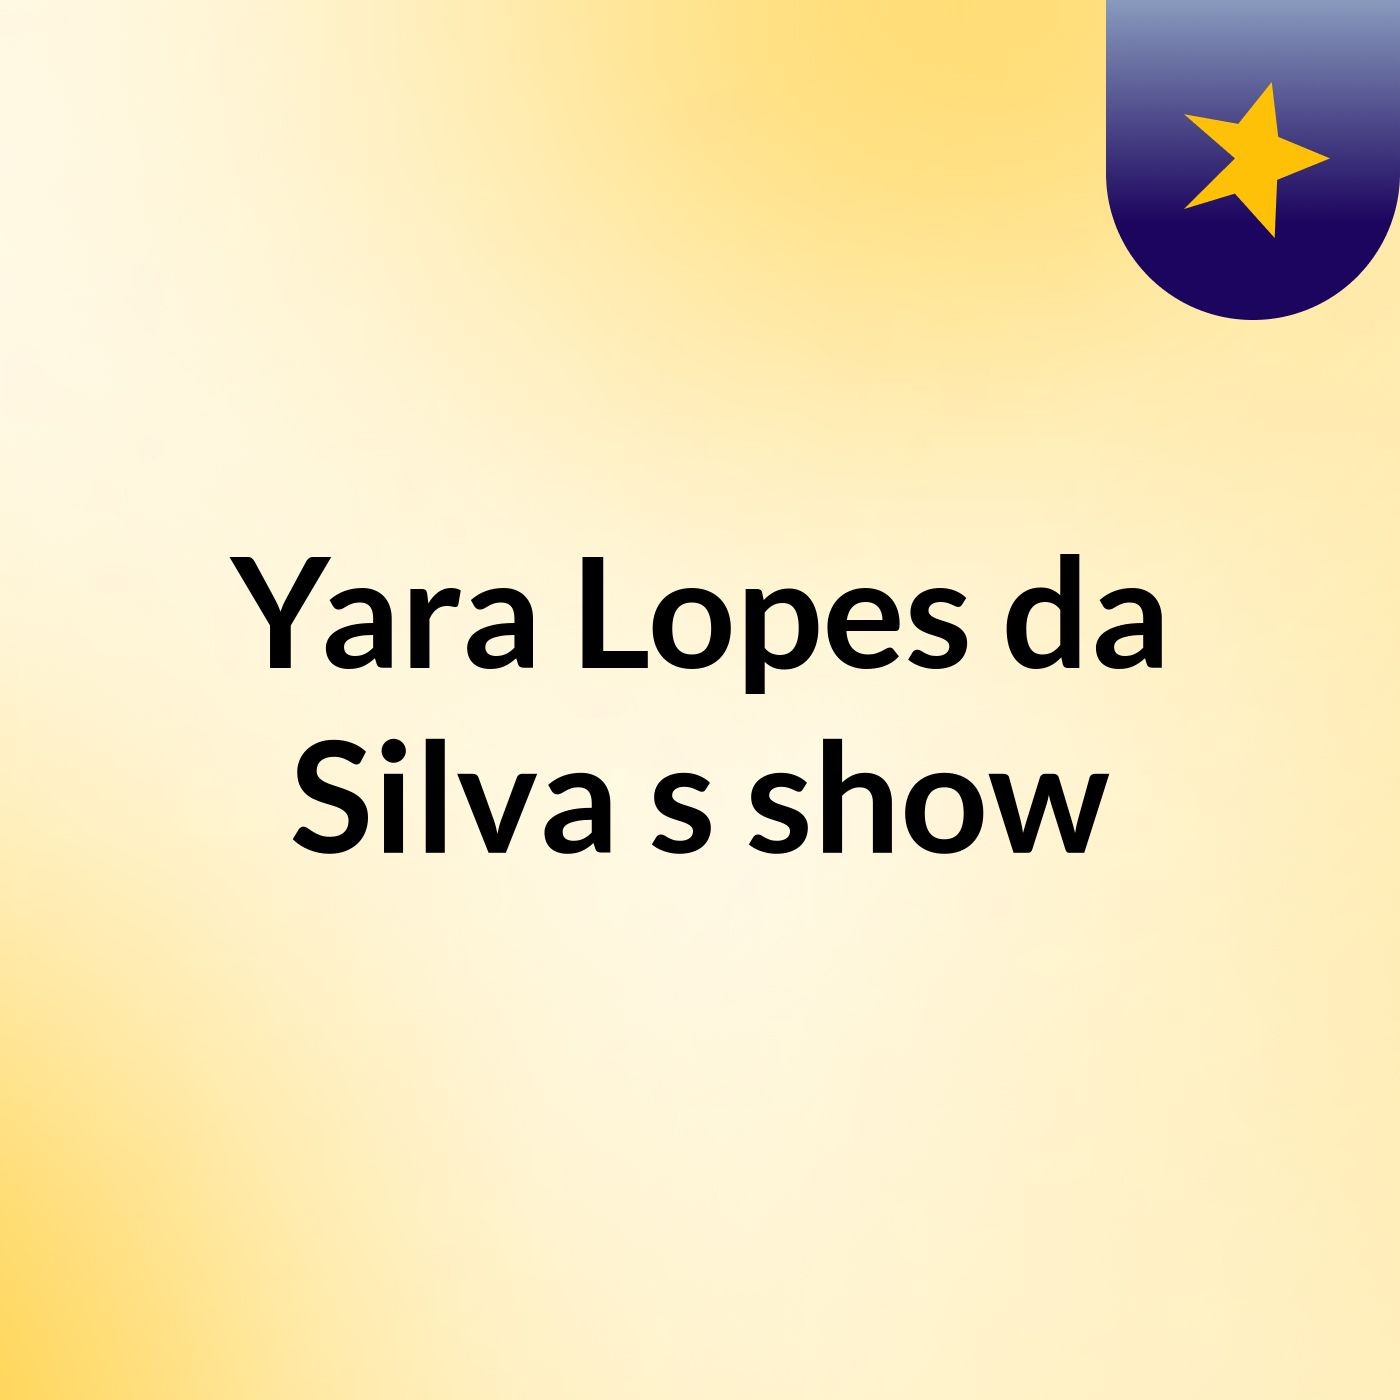 Episódio 4 - Yara Lopes da Silva's show